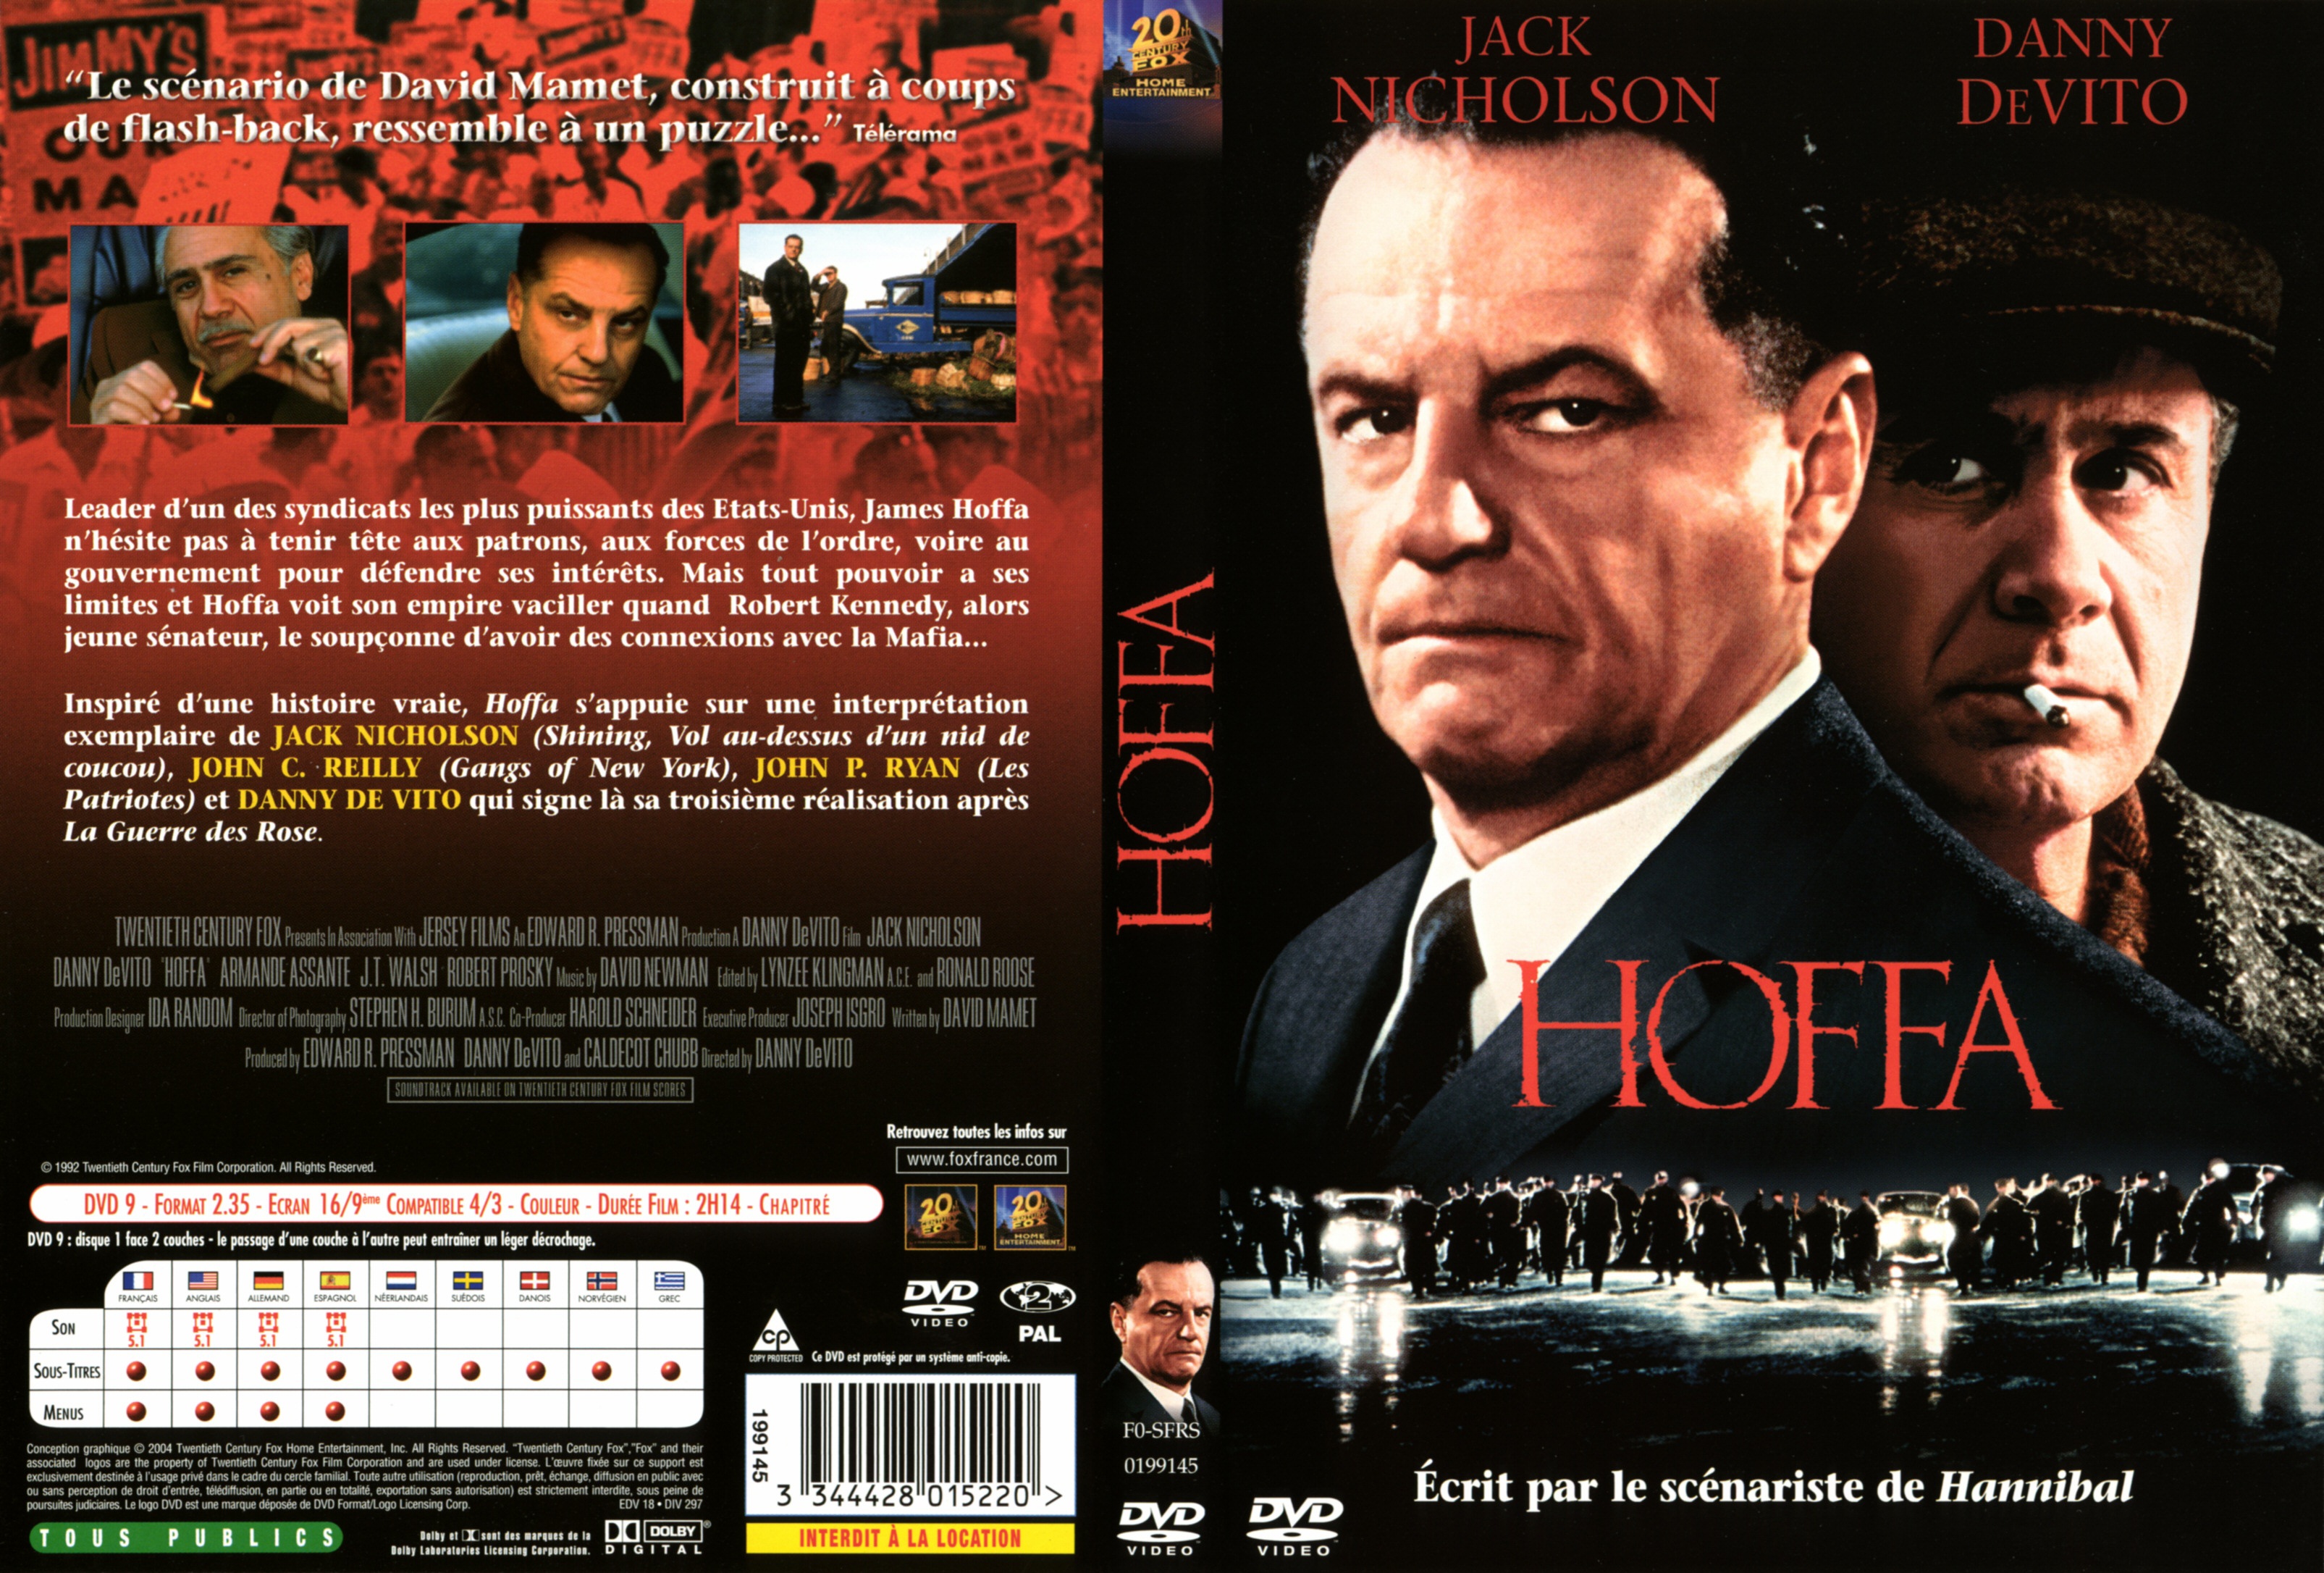 Jaquette DVD Hoffa v2